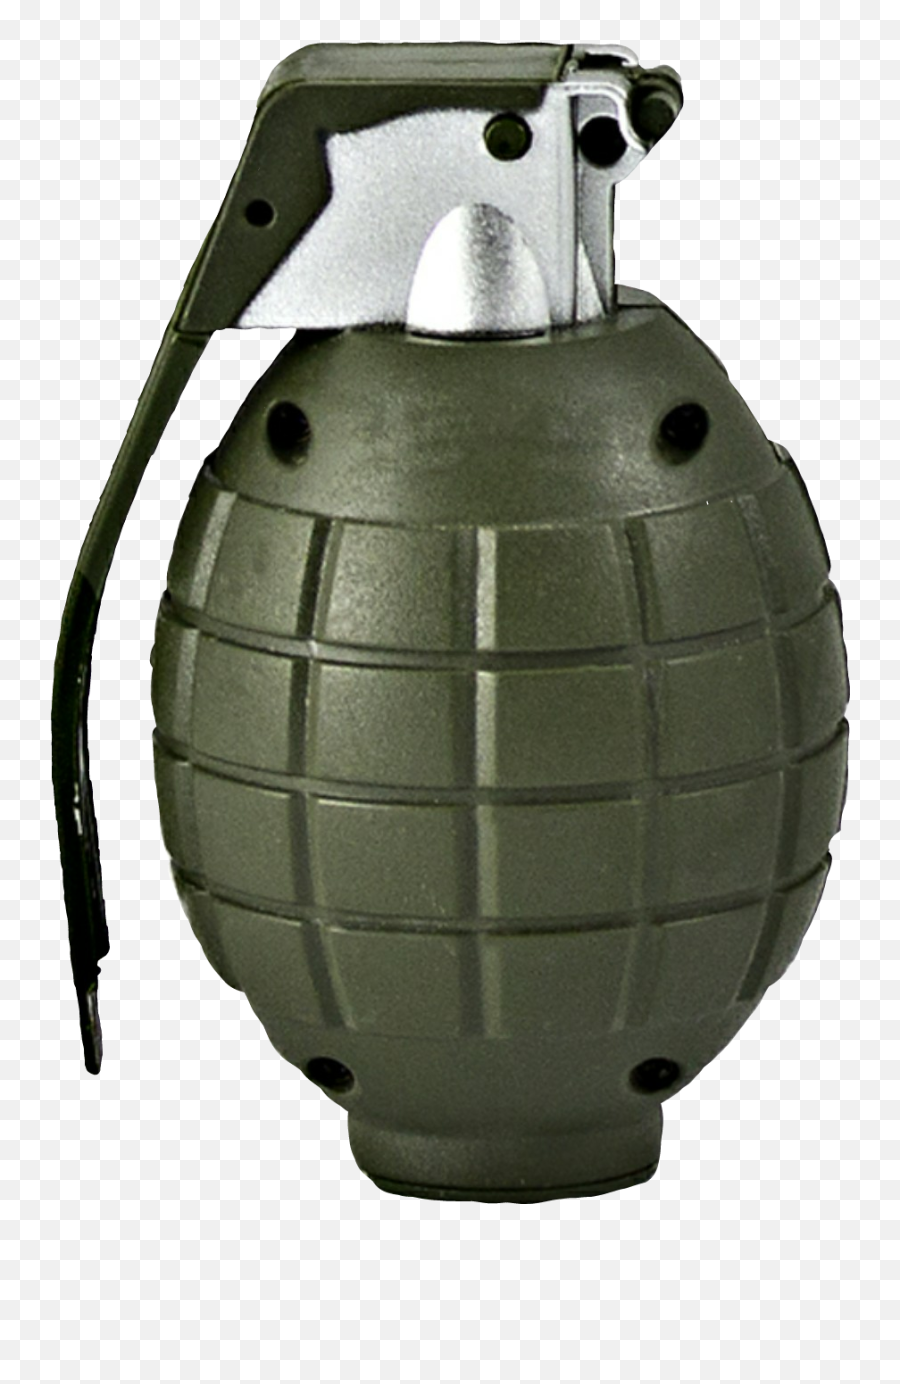 Grenade - Toy Hand Grenade Emoji,Grenade Emoji